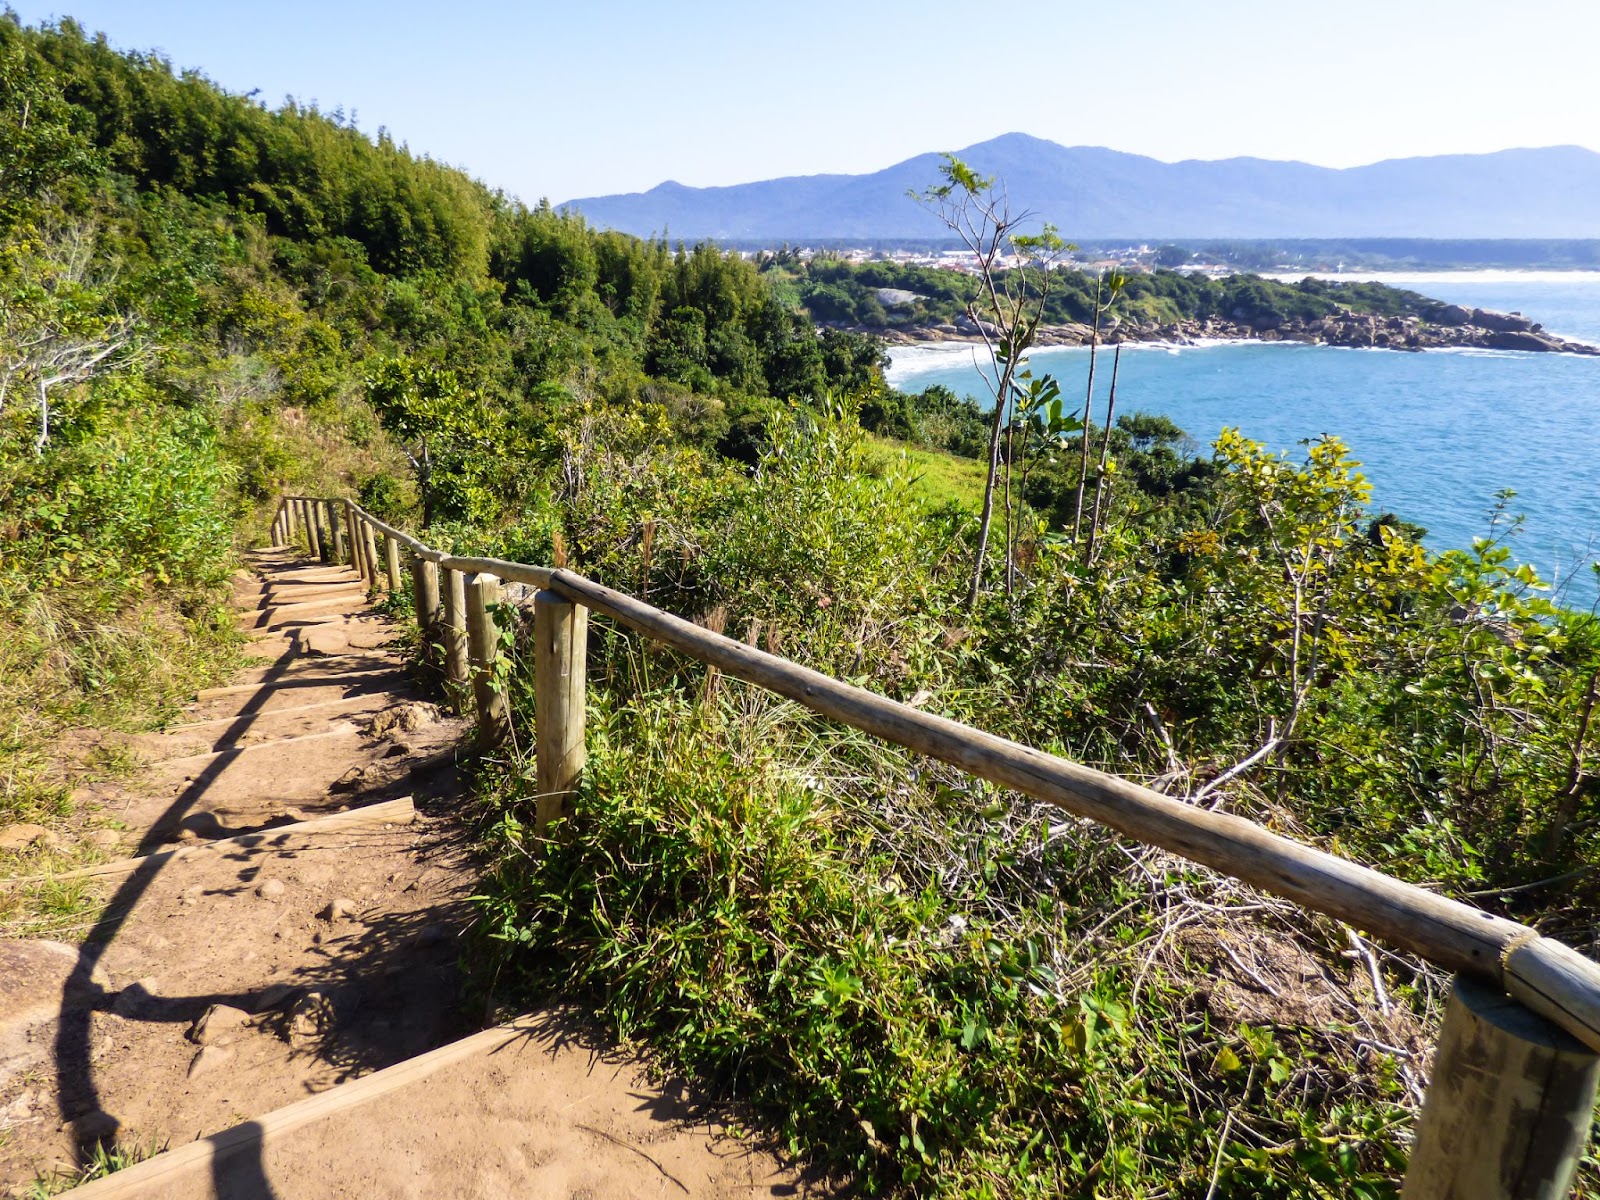 Escadaria que leva até as piscinas naturais da Barra da Lagoa, em Florianópolis. Os degraus de terra batida estão cercados por vegetação verde. Ao fundo, aparecem o mar azul e as montanhas.